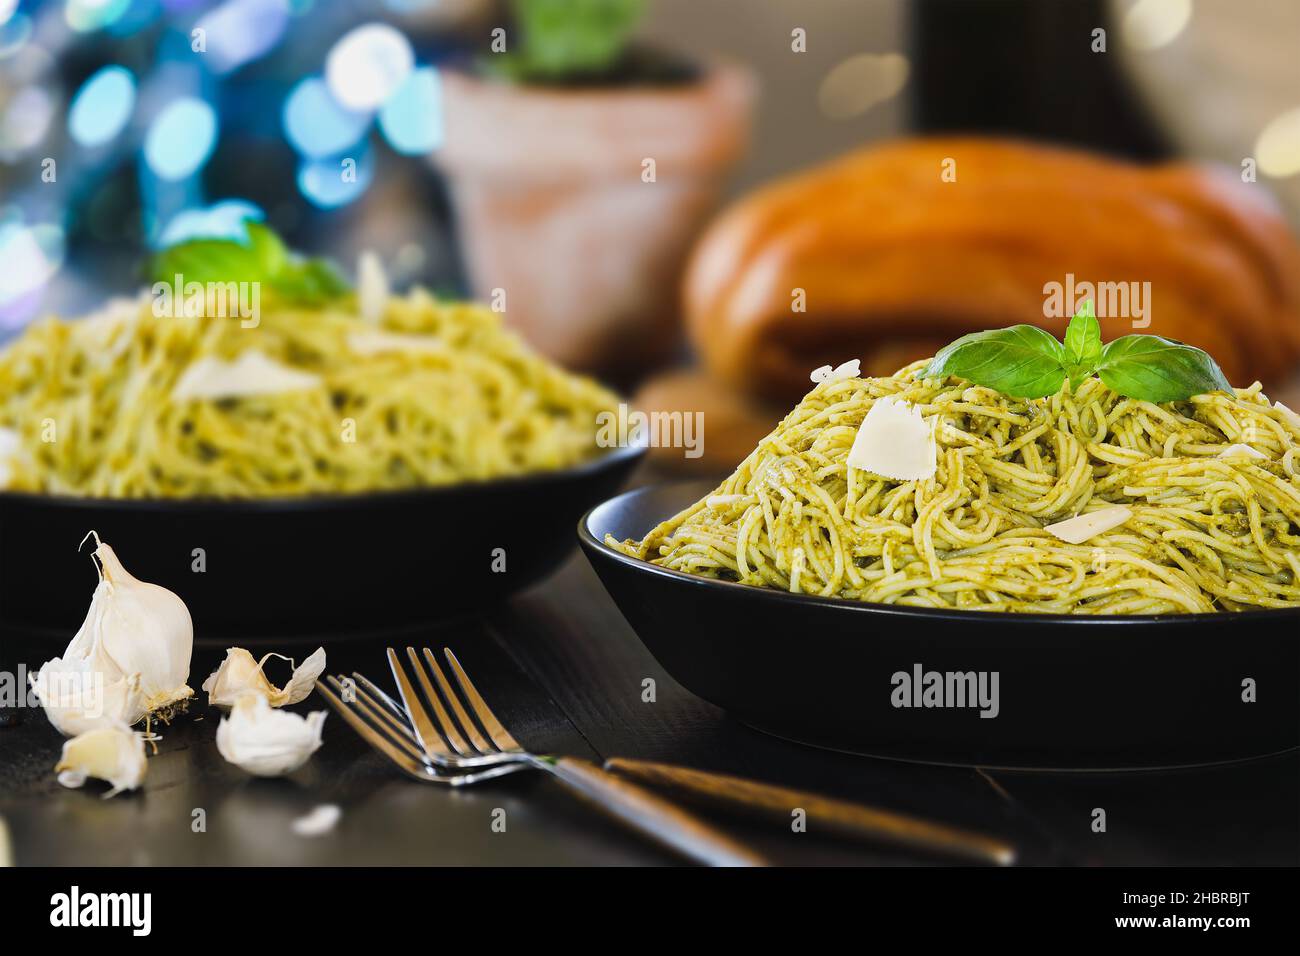 Enfoque selectivo de dos platos de pasta de pesto spaghetti con hojas frescas de albahaca y queso parmesano sobre una mesa de madera rústica negra. Foto de stock